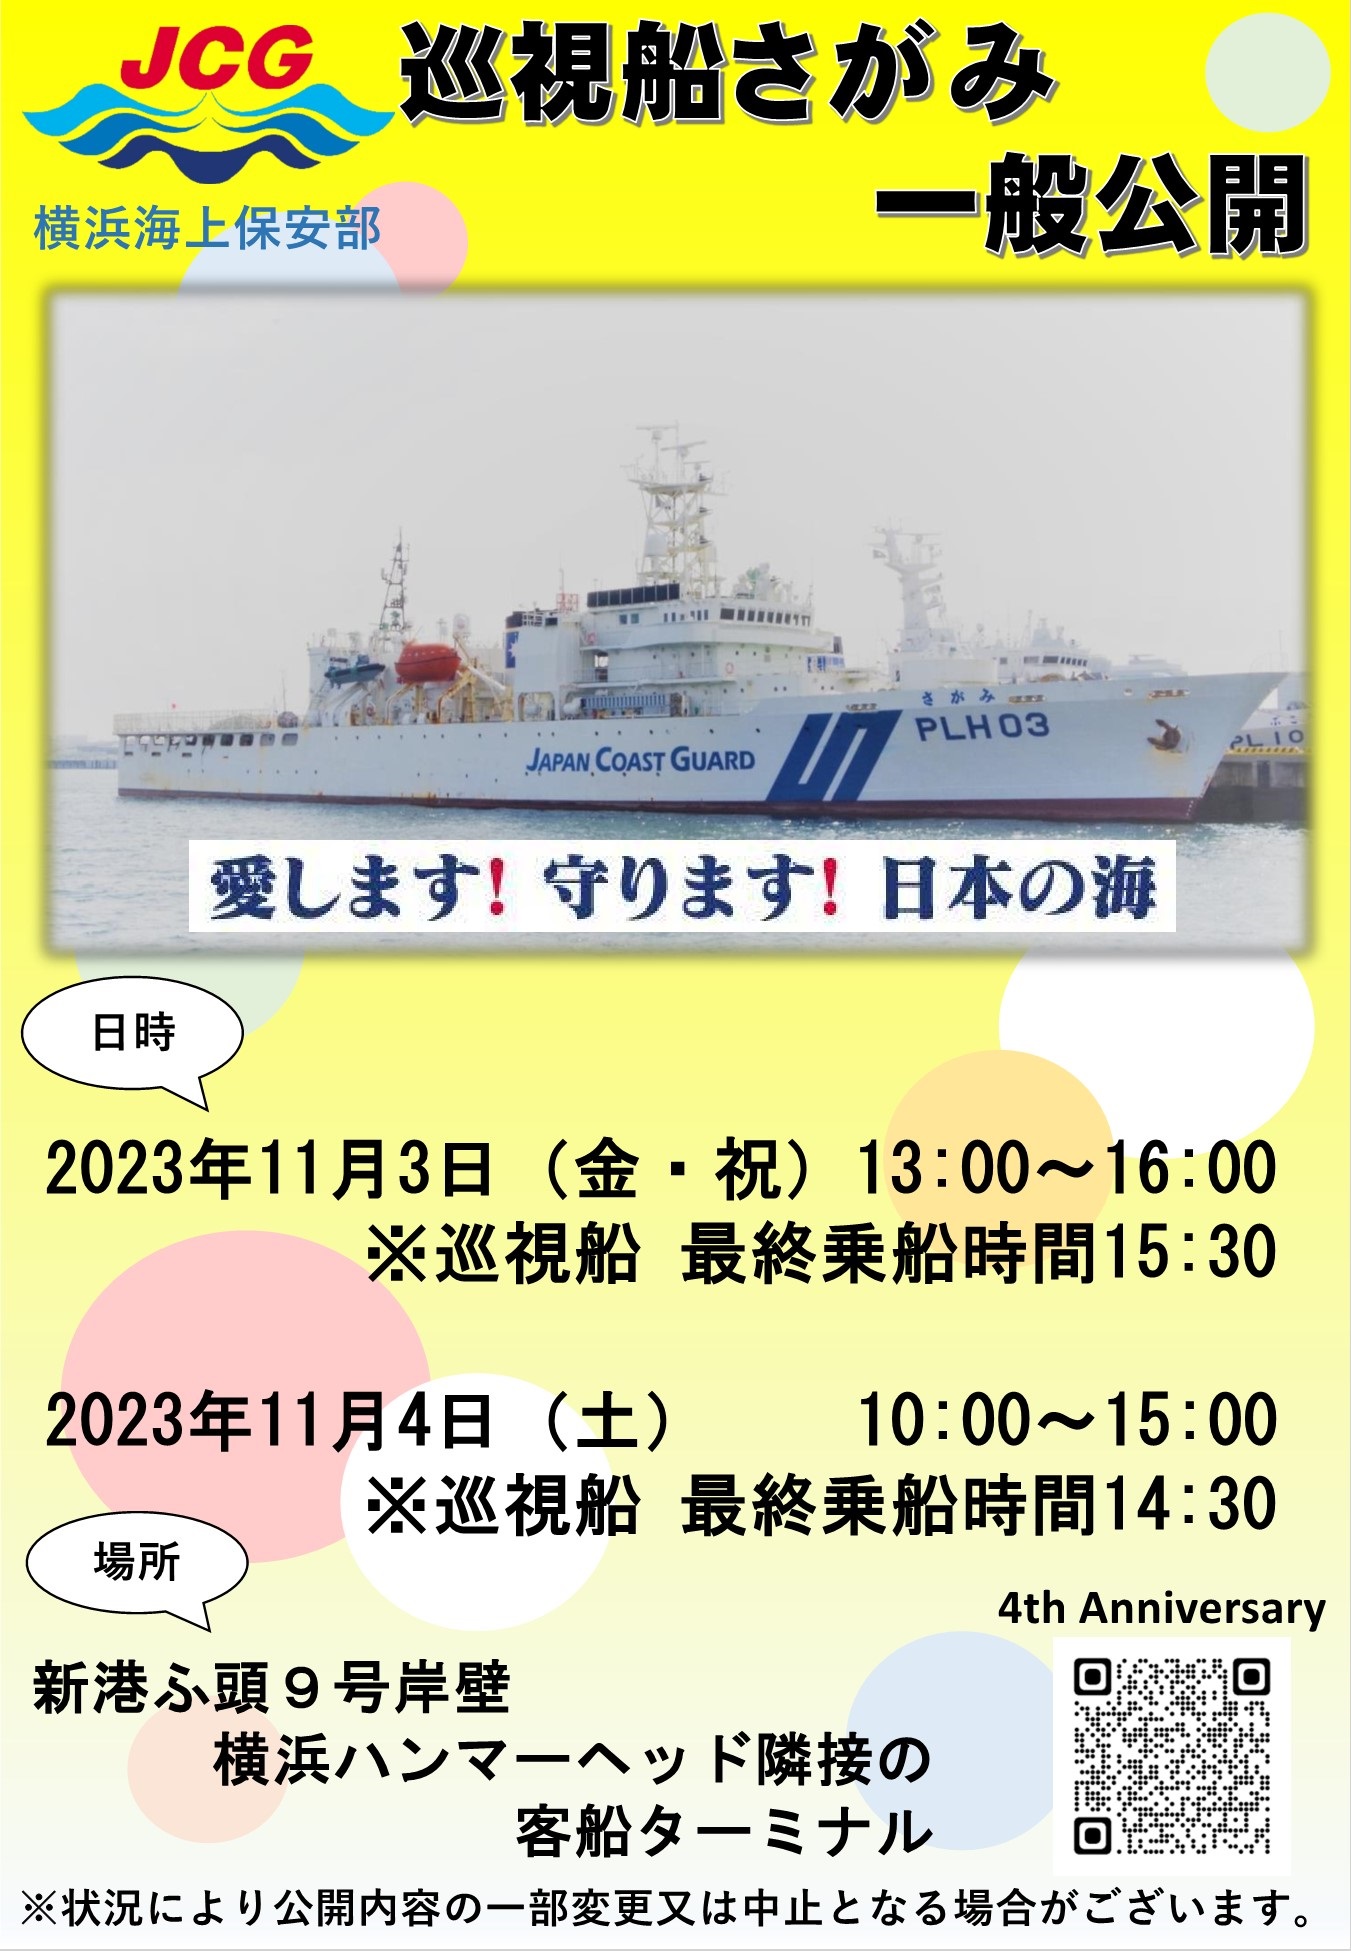 横浜海上保安部 巡視船「さがみ」一般公開：ポスター